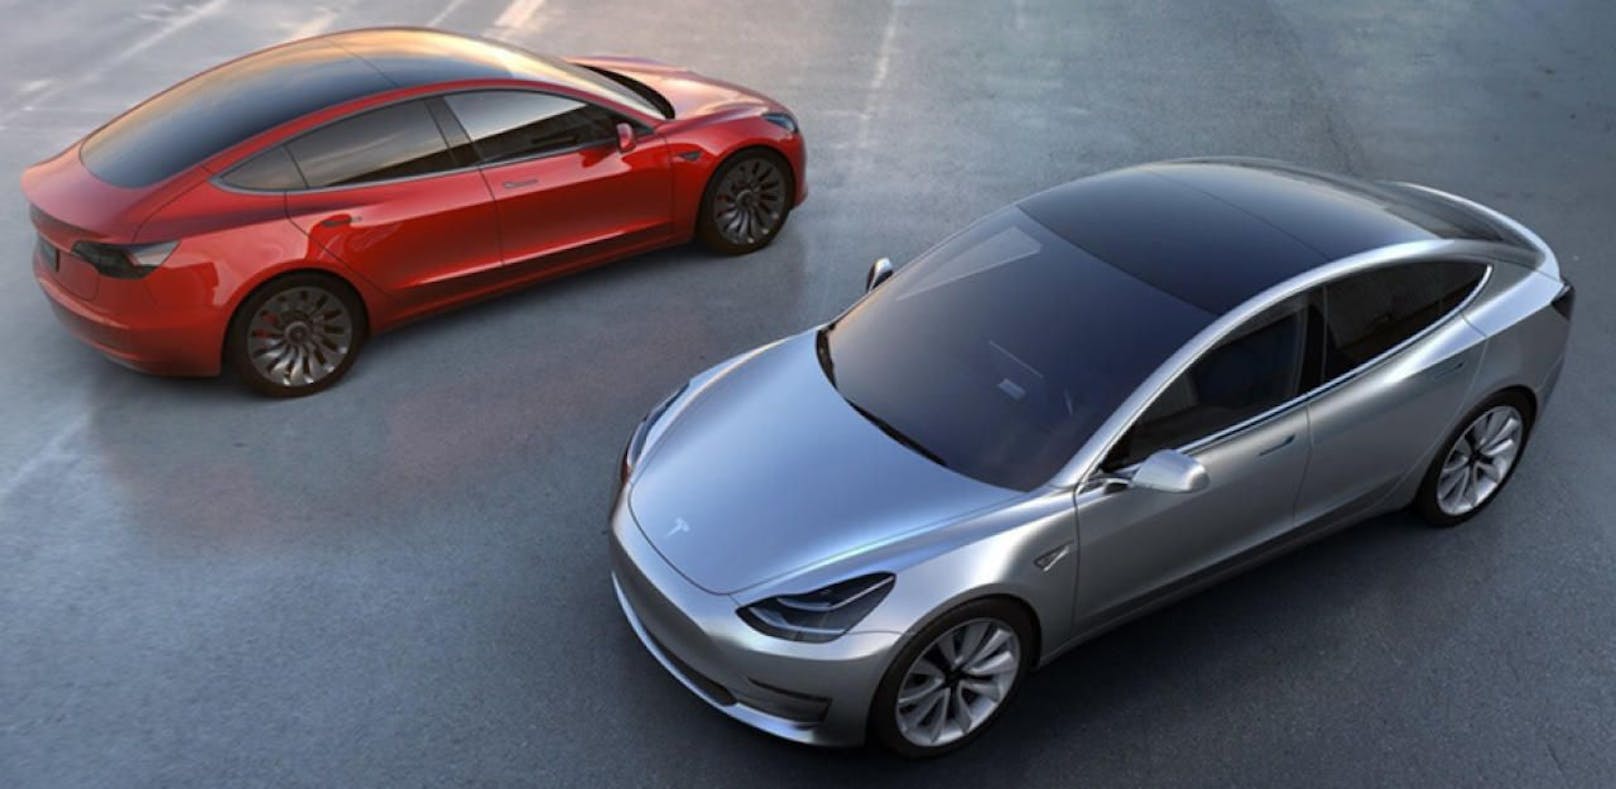 Tesla-Fahrer können künftig mit Furz- und Mecker-Geräuschen hupen, sagt Firmenchef Elon Musk